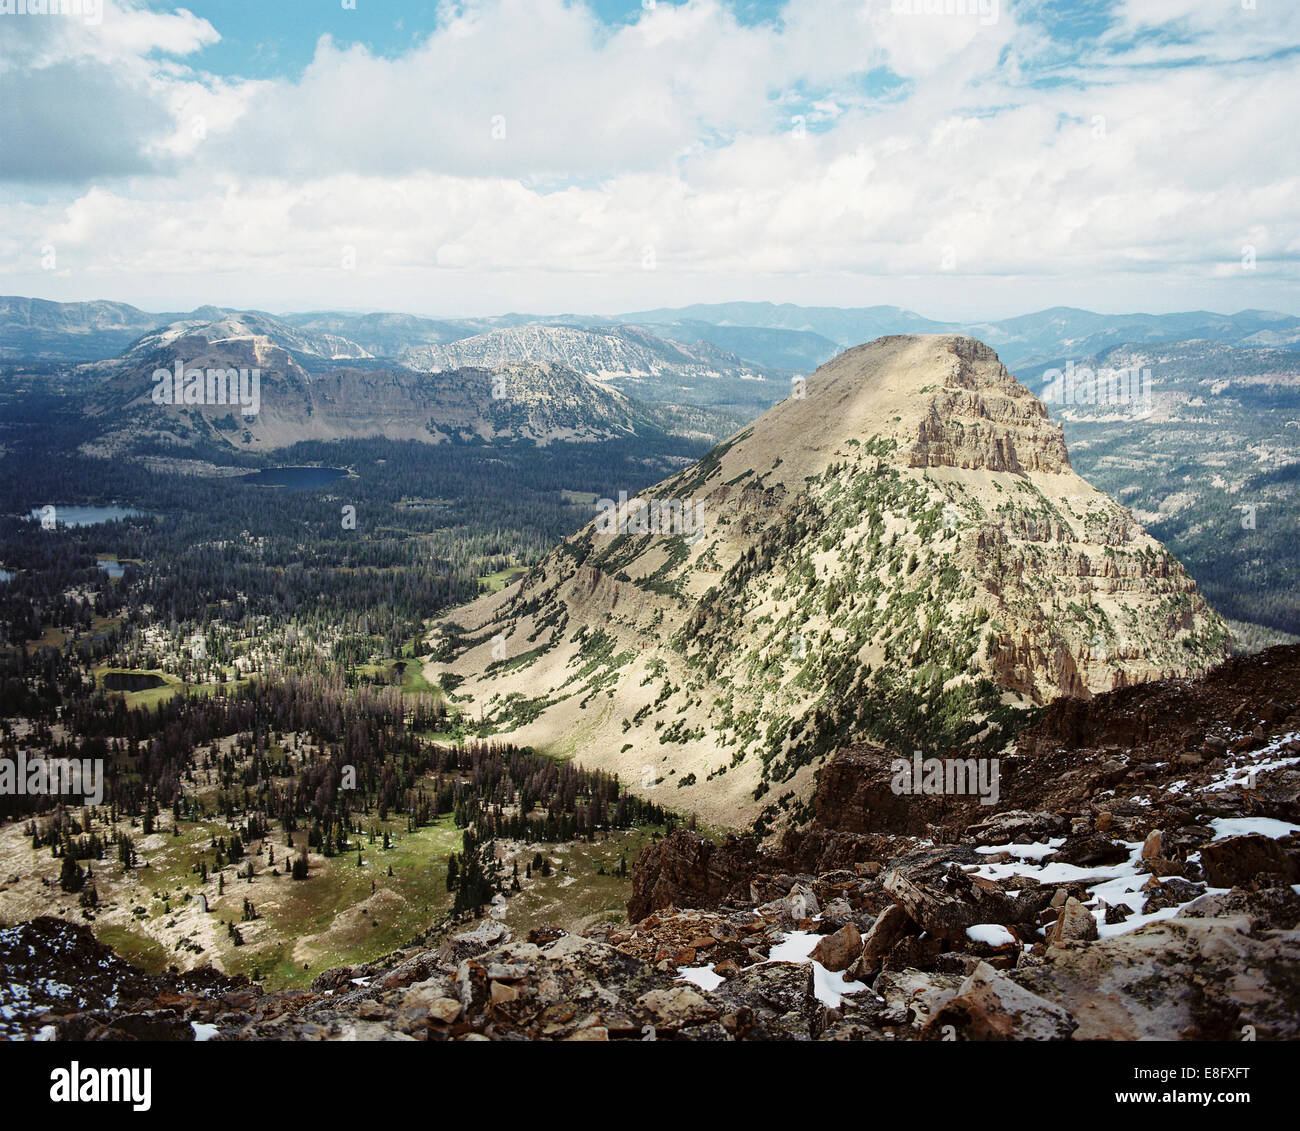 Estados Unidos, Utah, vista aérea de las montañas y los valles de Monte Calvo Foto de stock